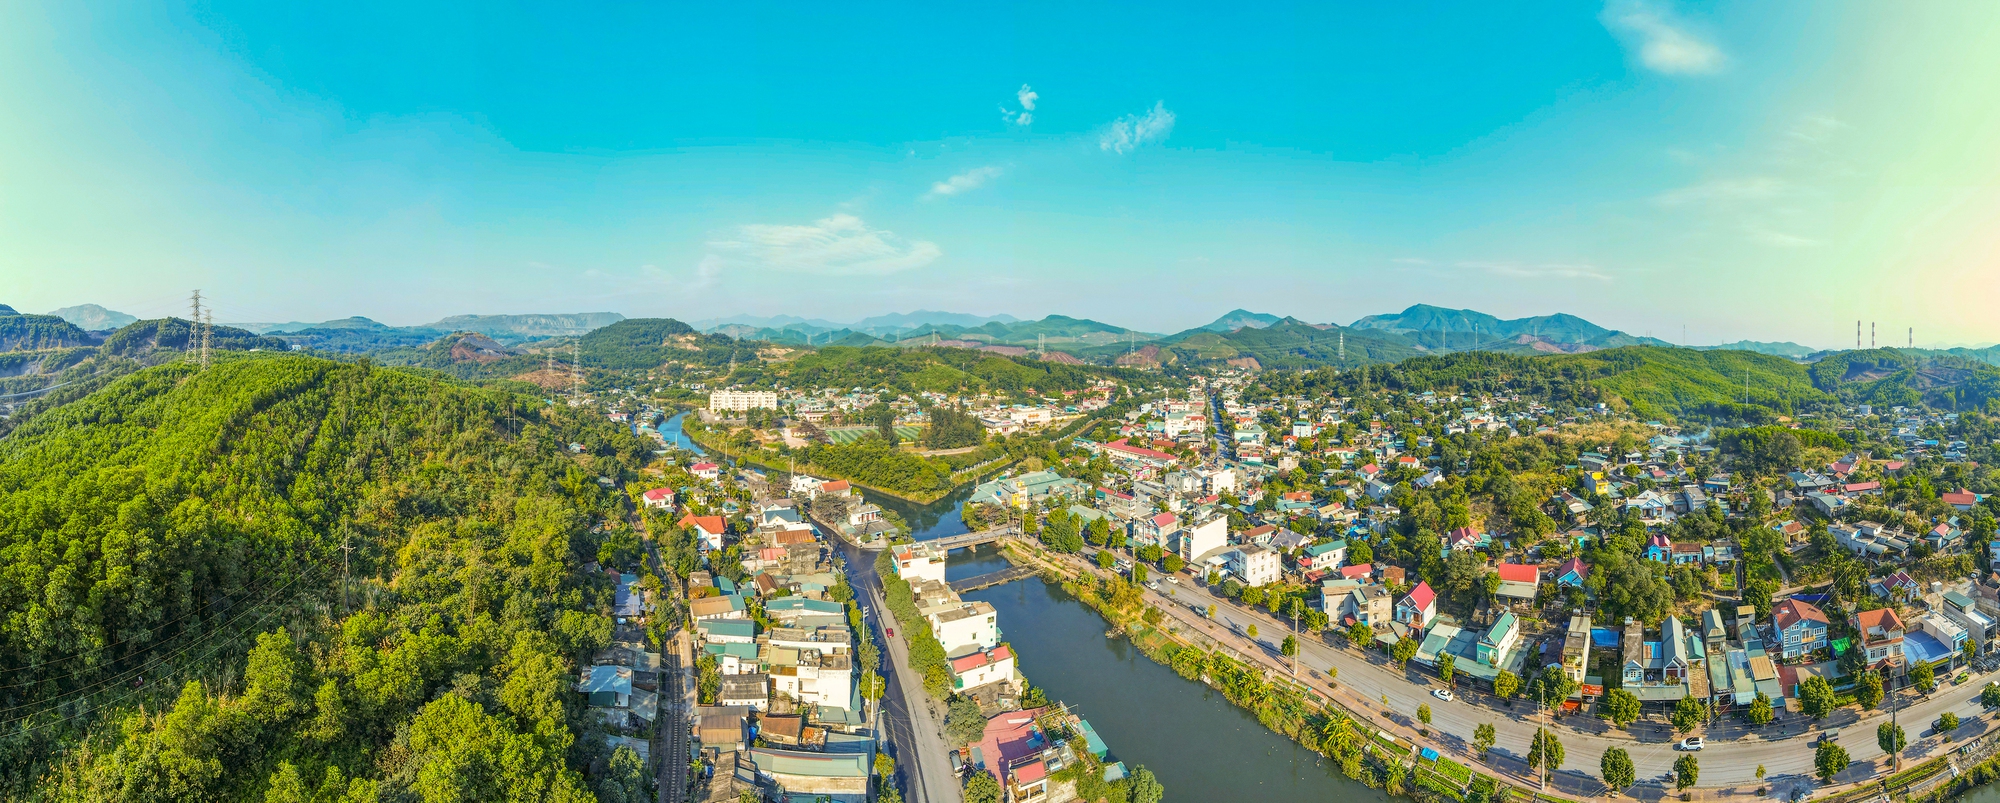 Phường rộng nhất Việt Nam, gấp 22 lần quận Hoàn Kiếm - Ảnh 1.